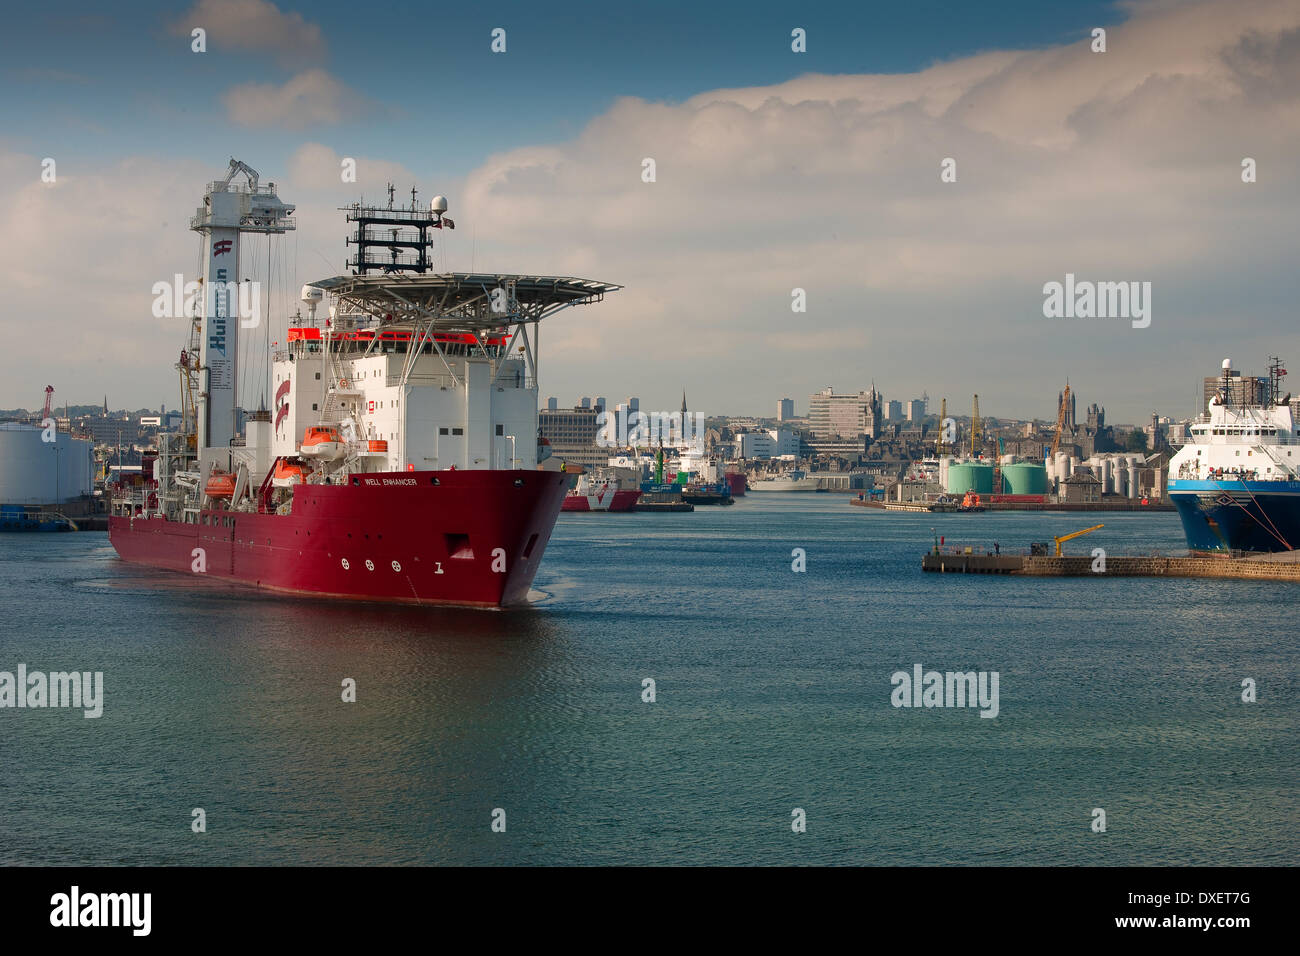 Le navire de soutien à l'industrie pétrolière et l'Enhancer' sort de quais dans le port d'Aberdeen, Ecosse Banque D'Images